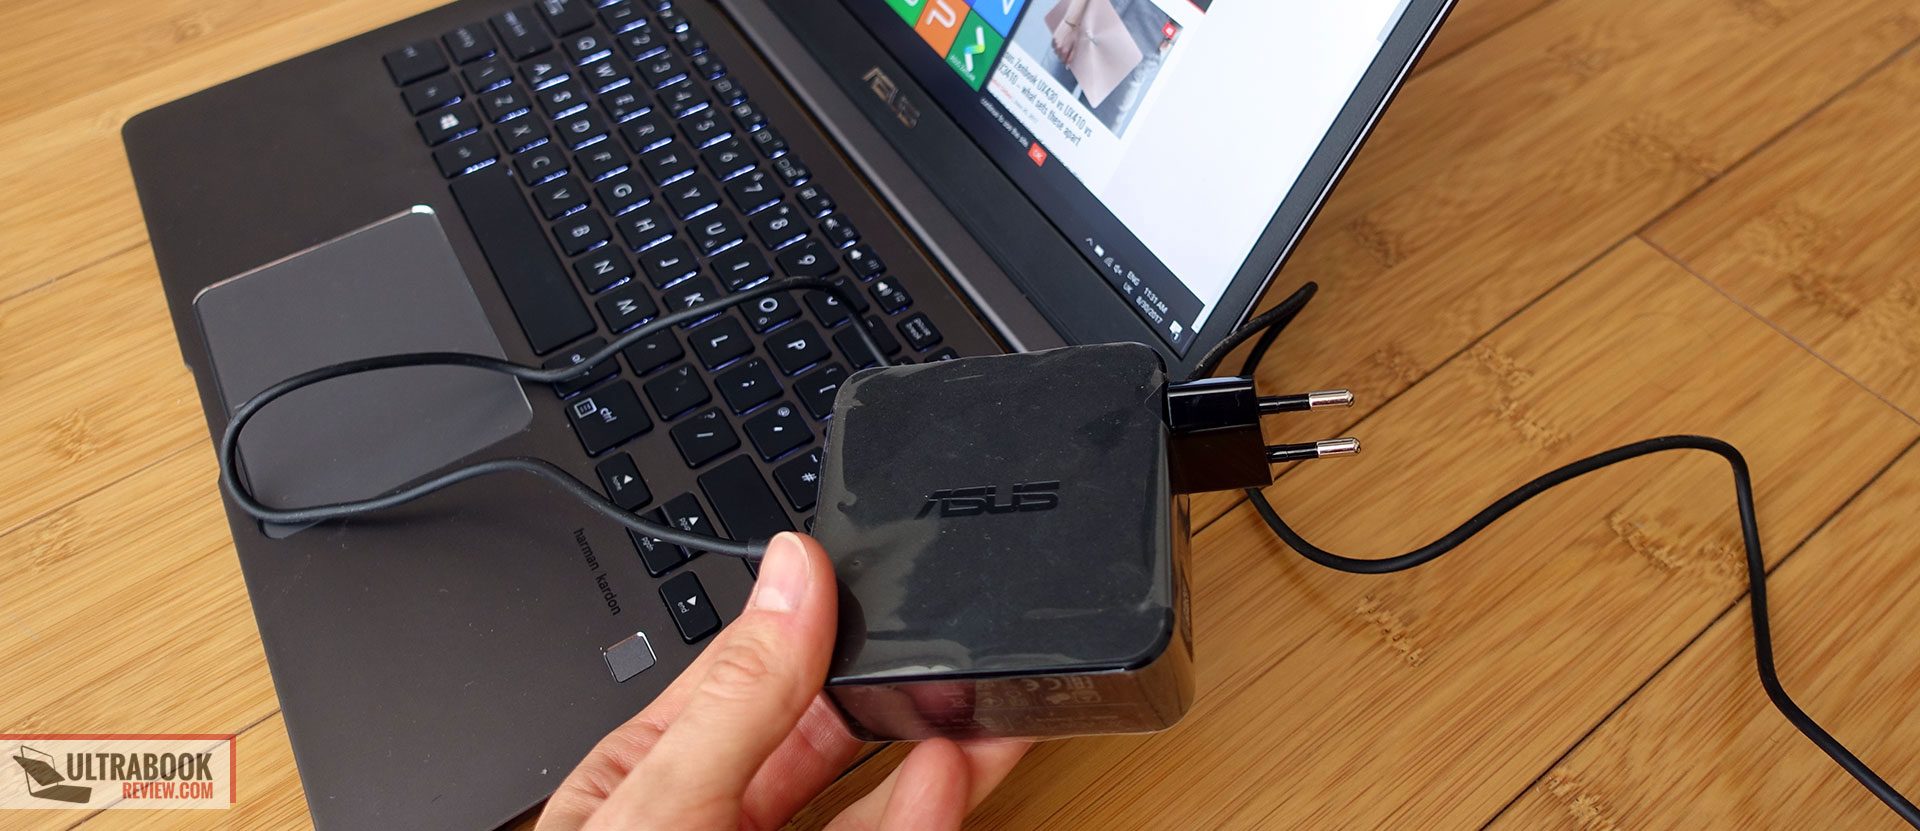 Asus Zenbook 13 UX331UN review - Core i5-8250U, Nvidia MX150